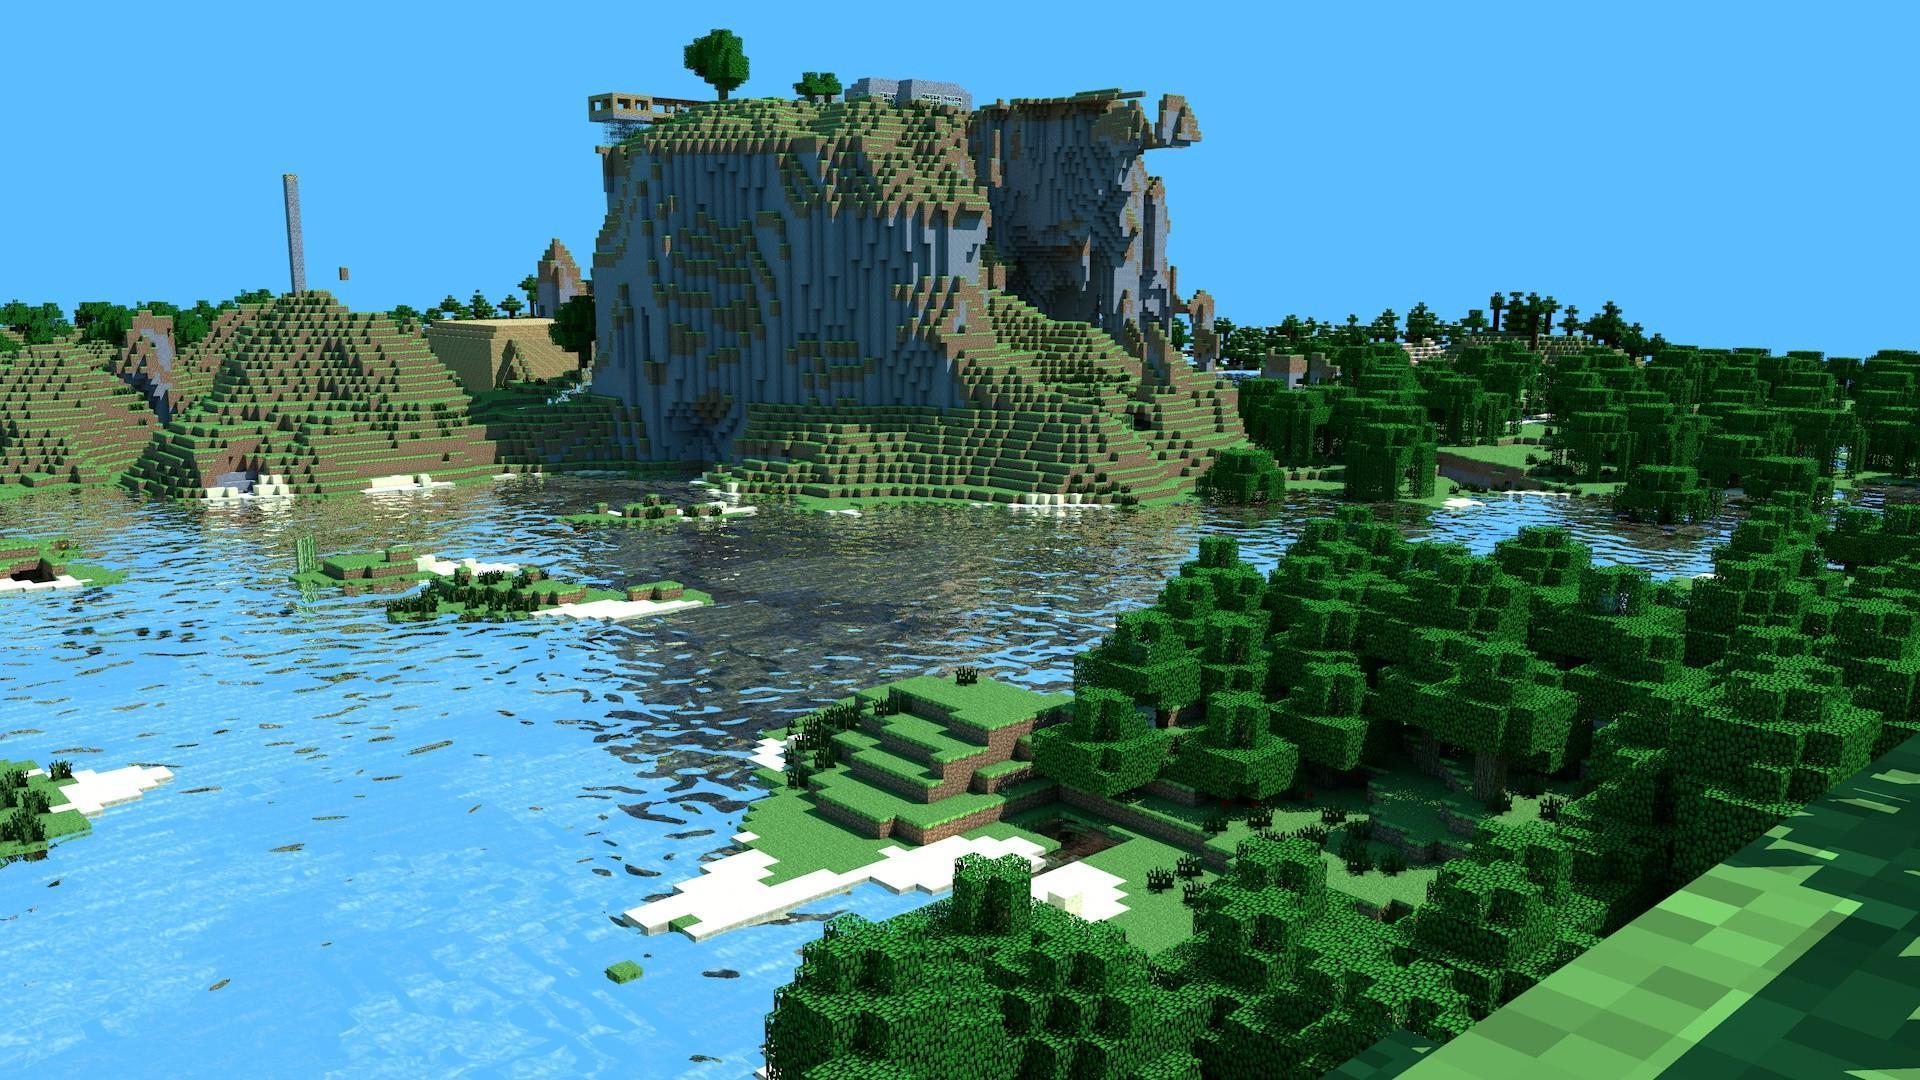 Minecraft Hd Desktop Wallpapers Top Free Minecraft Hd Desktop Backgrounds Wallpaperaccess